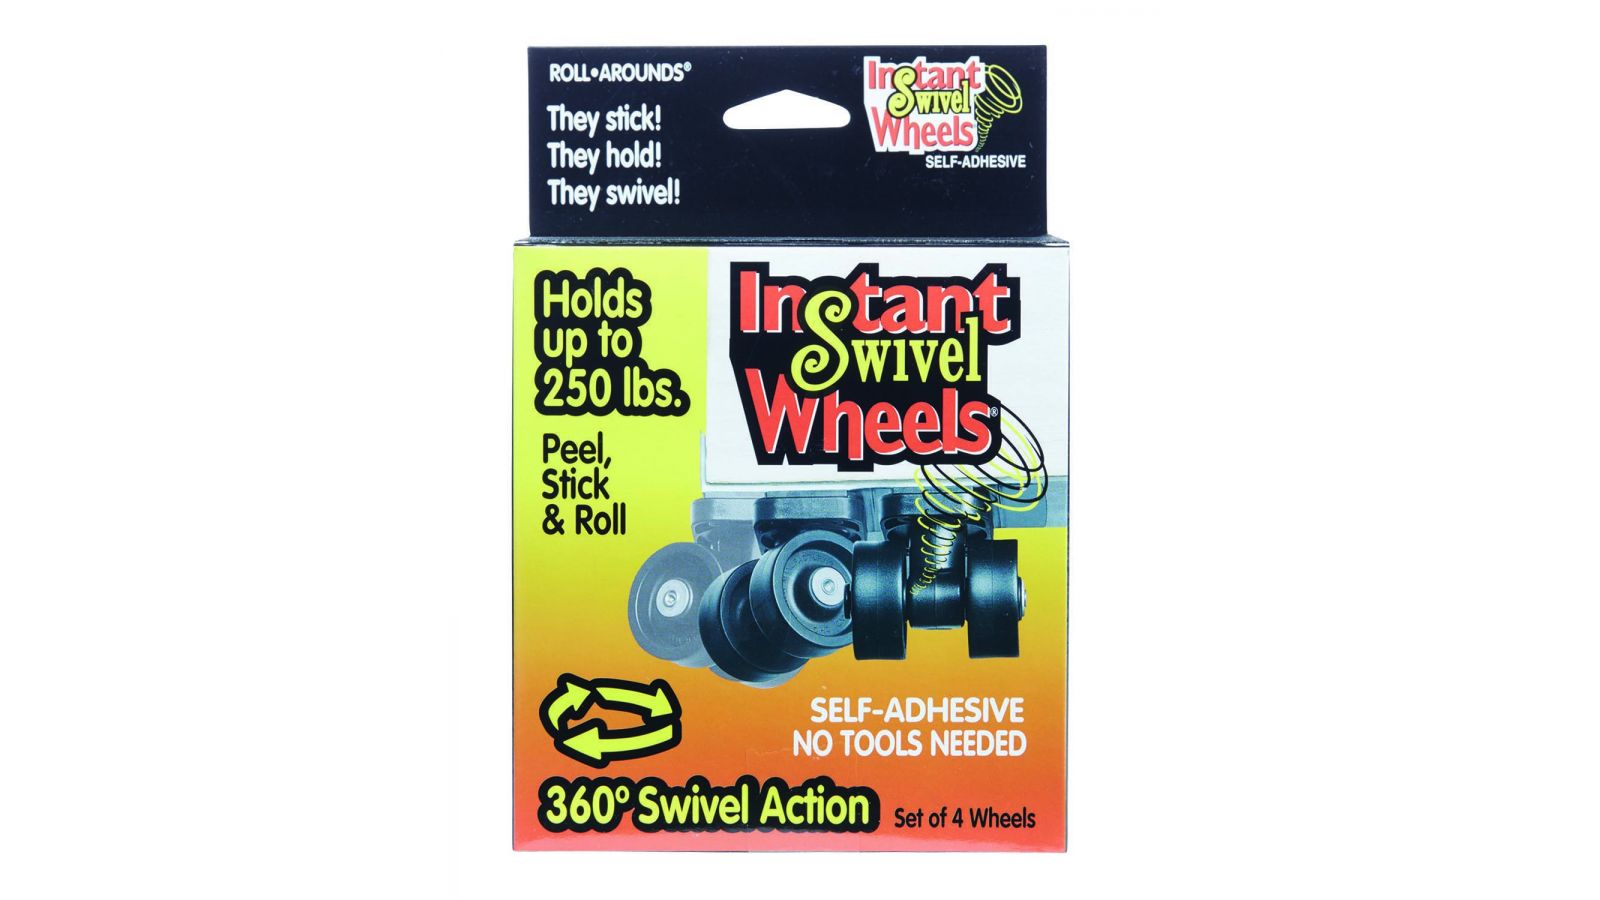 Instant Swivel Wheels